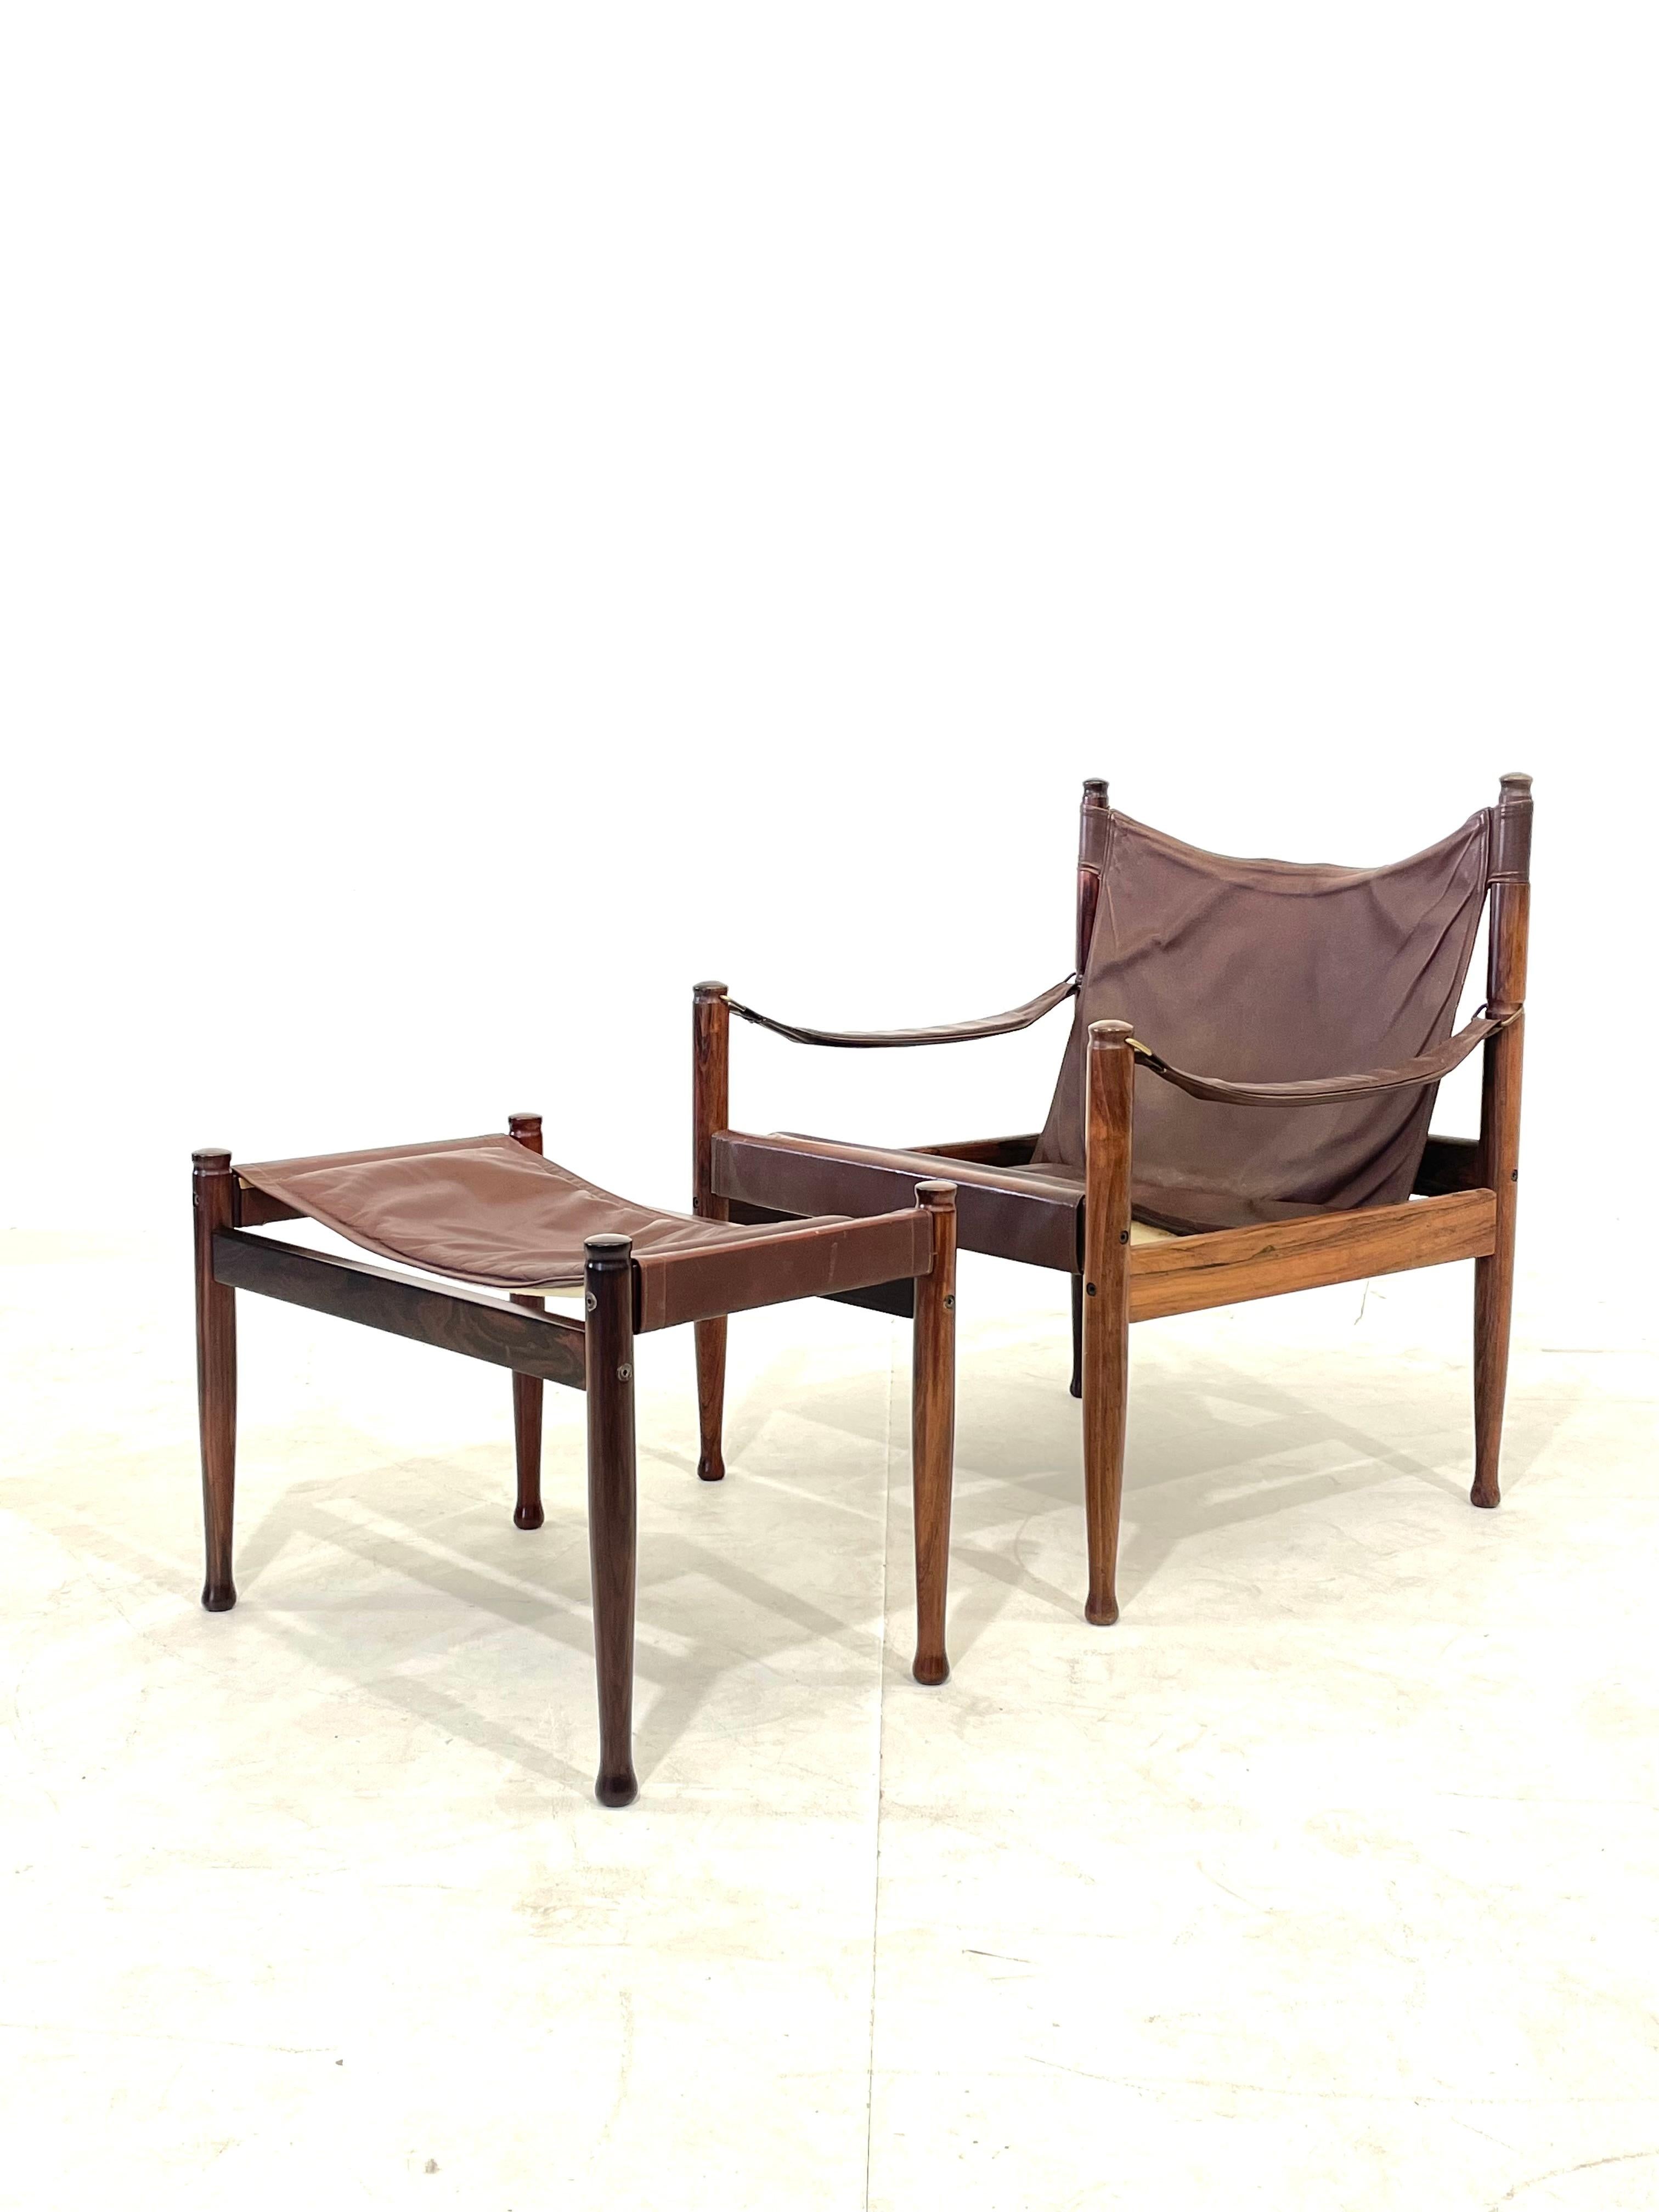 Safari Lounge Chair und Ottoman, entworfen von Erik Worts für Niels Eilersen, Dänemark, 1960. Hergestellt aus massivem Palisanderholz und Ledersitz mit Messingdetails. Sehr schöner patinierter Ledersitz, aber immer noch in gutem Vintage-Zustand.